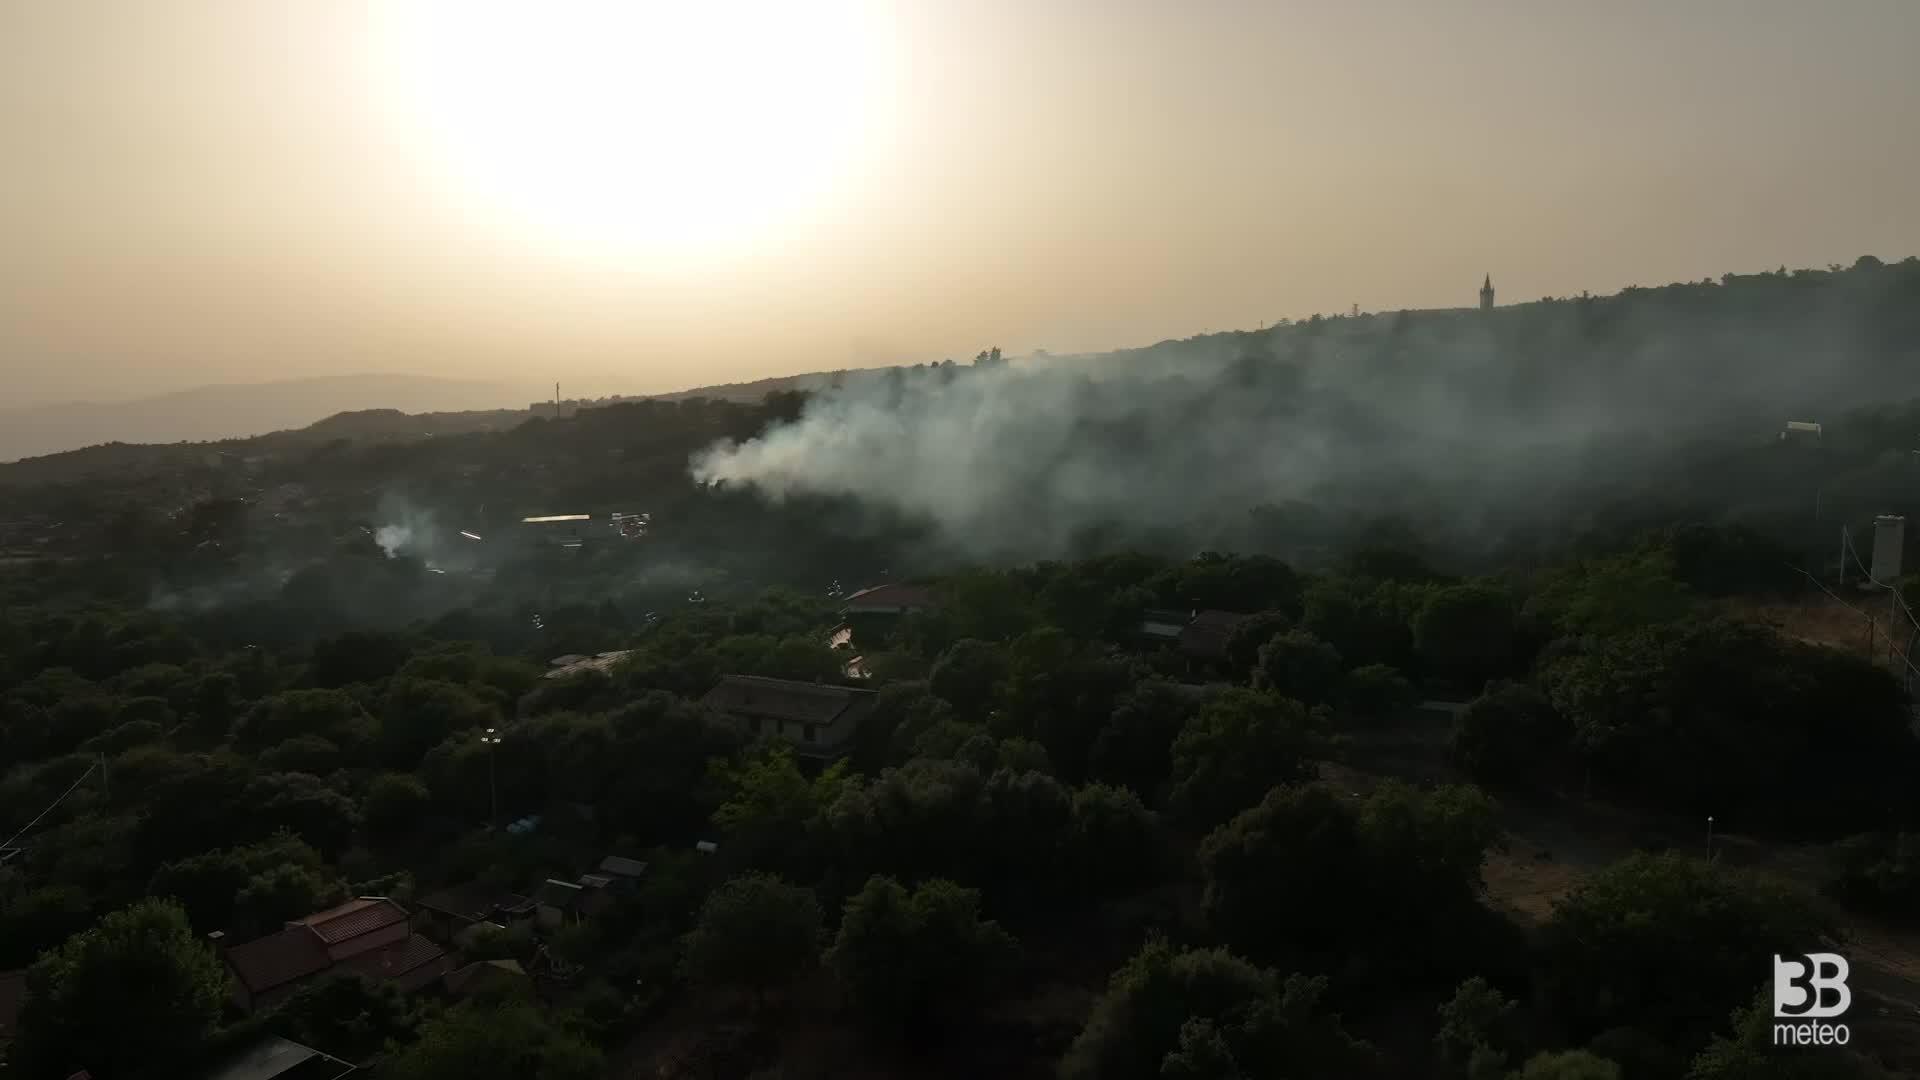 Emergenza incendi in Sicilia. Ragalna, focolai ancora attivi: le immagini dal drone. Video